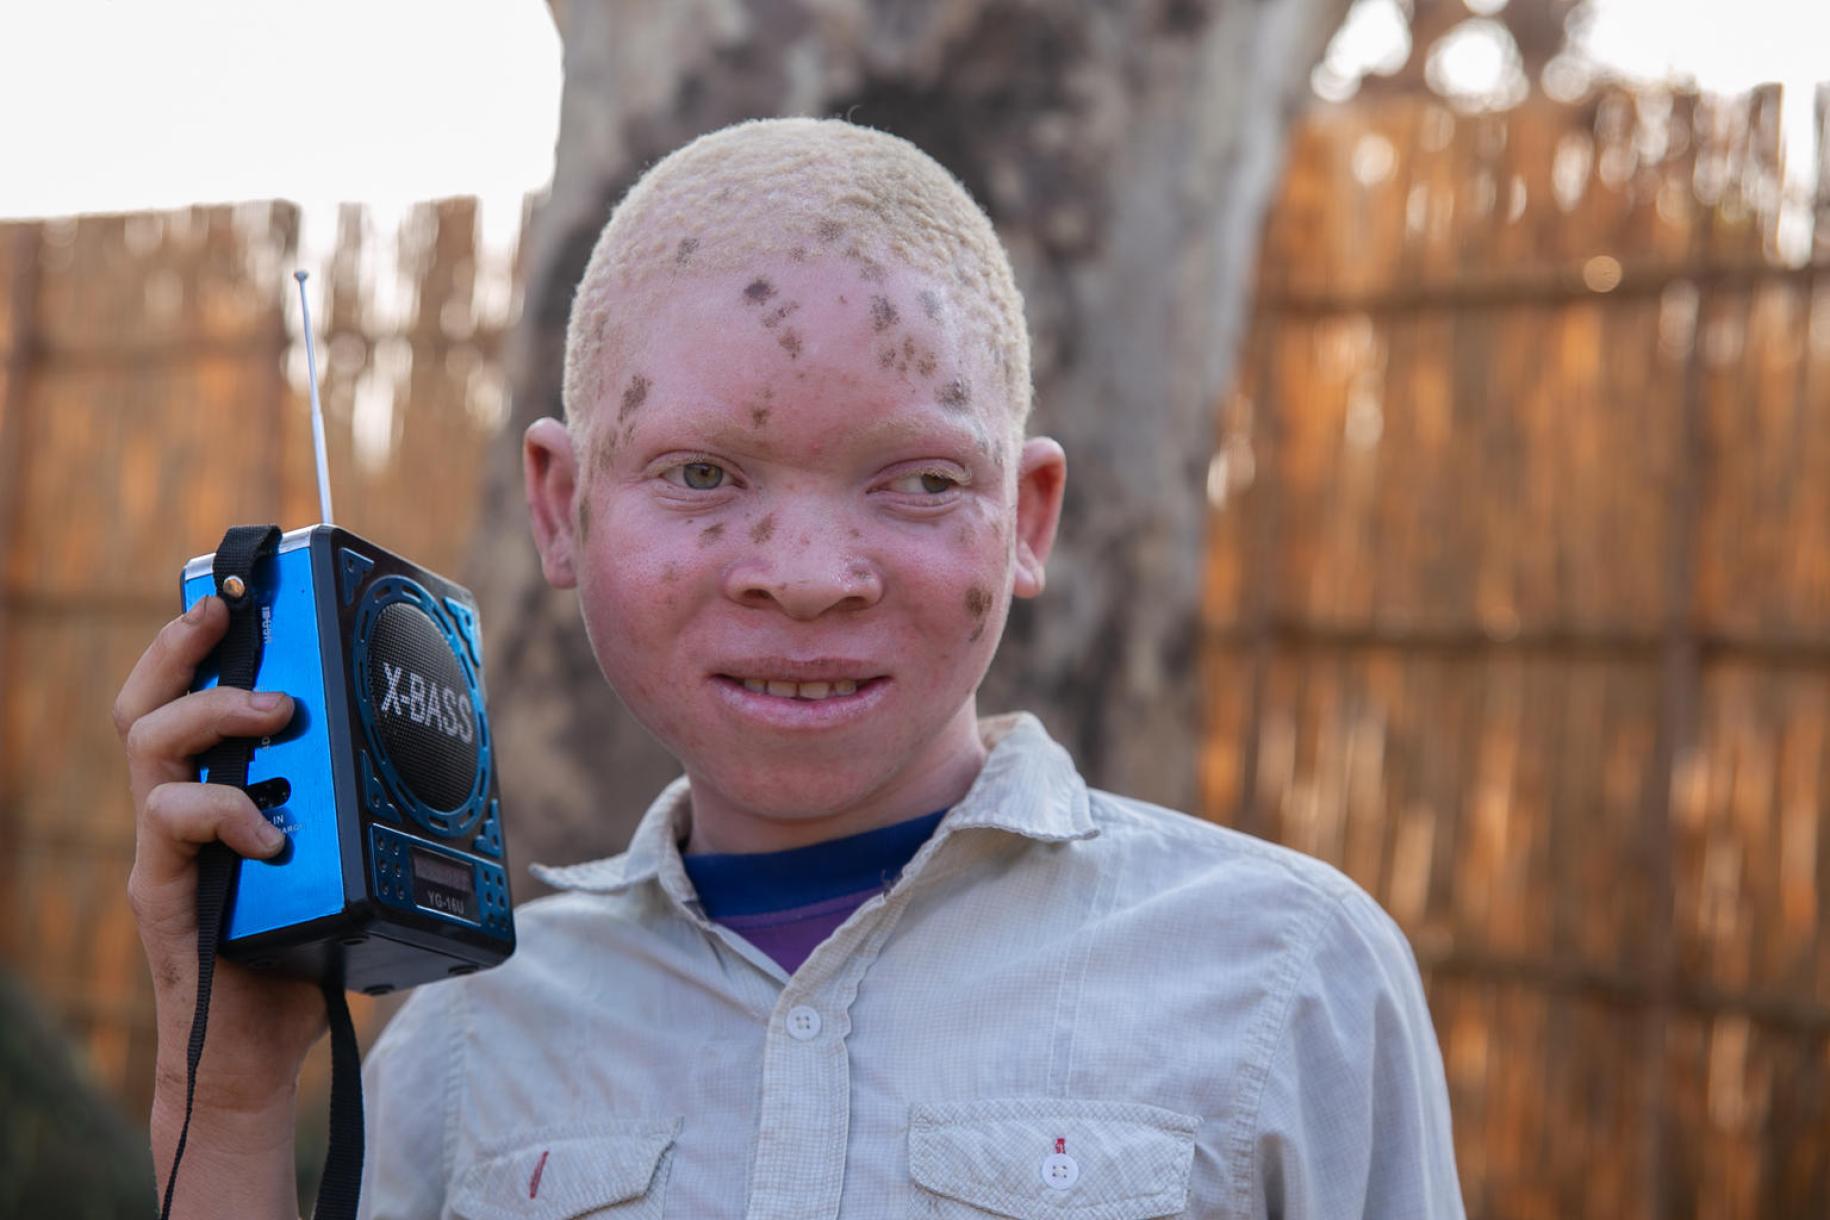 شيسيس جافالي، ١٥ عامًا، يحمل مذياعًا صغيرًا في يده للاستماع إلى دروسه.